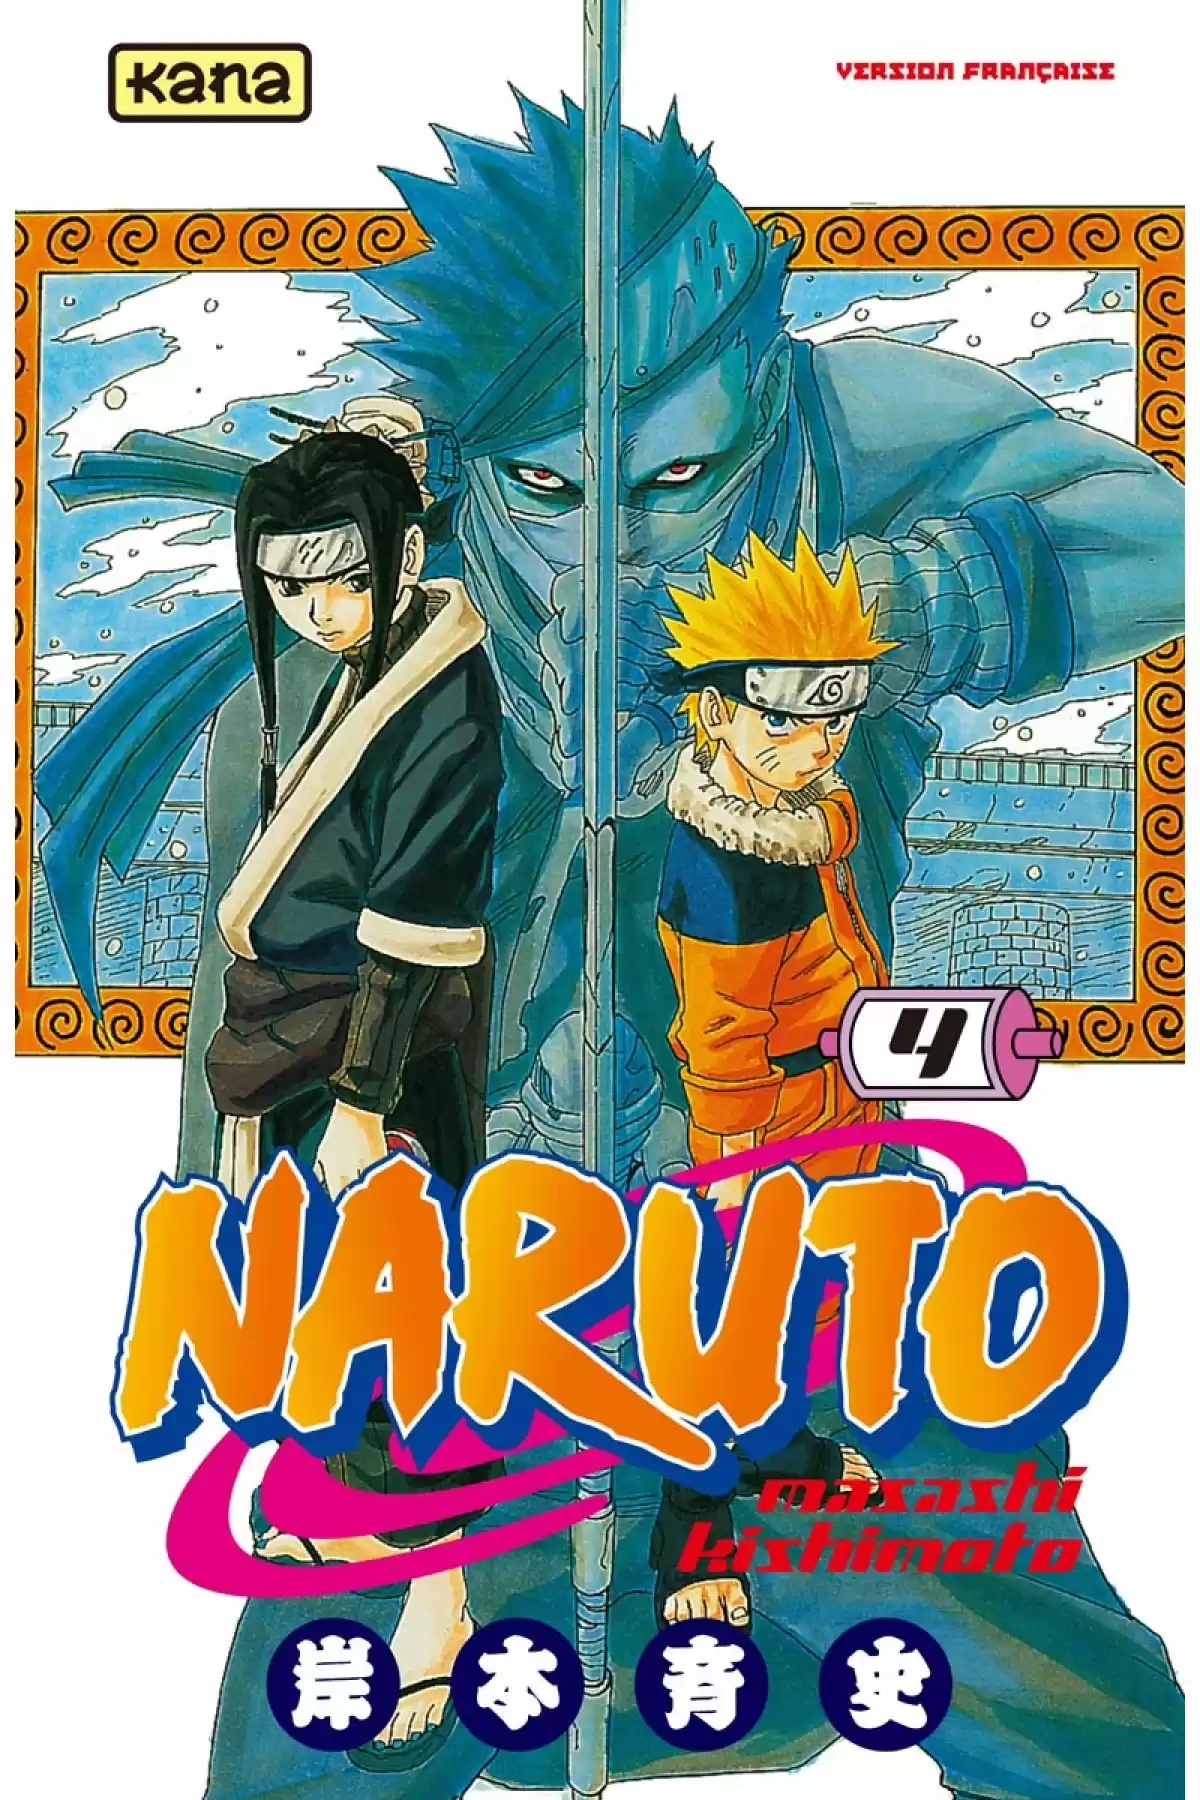 Naruto Volume 4 page 1